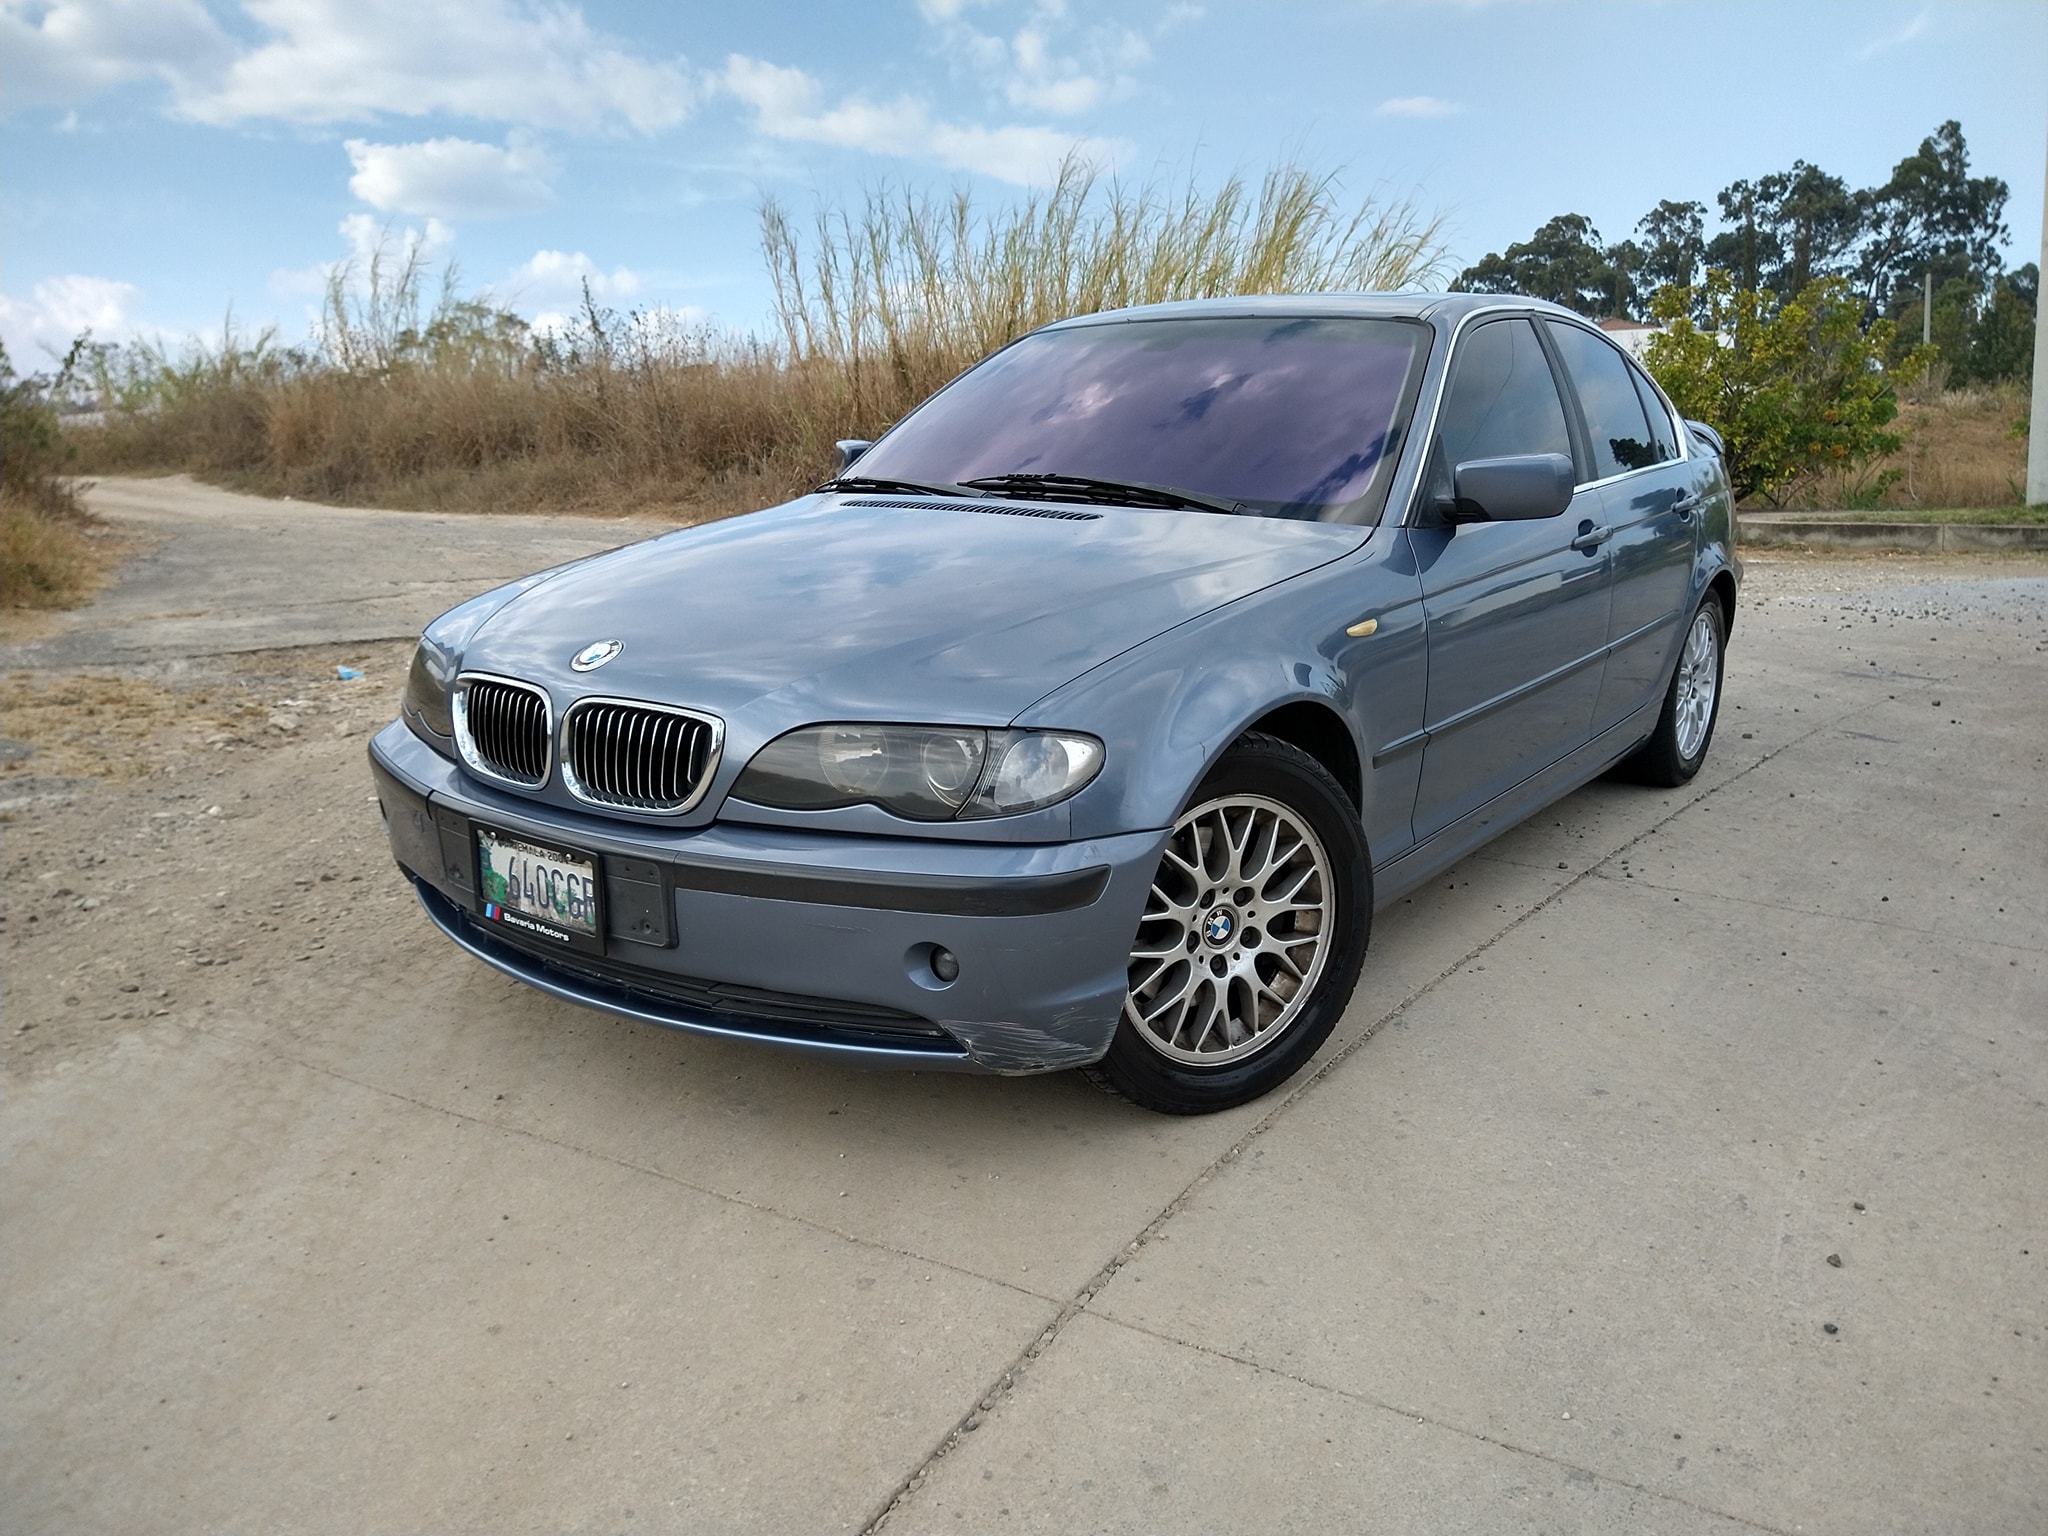 Vendo BMW 325i 2002 de agencia